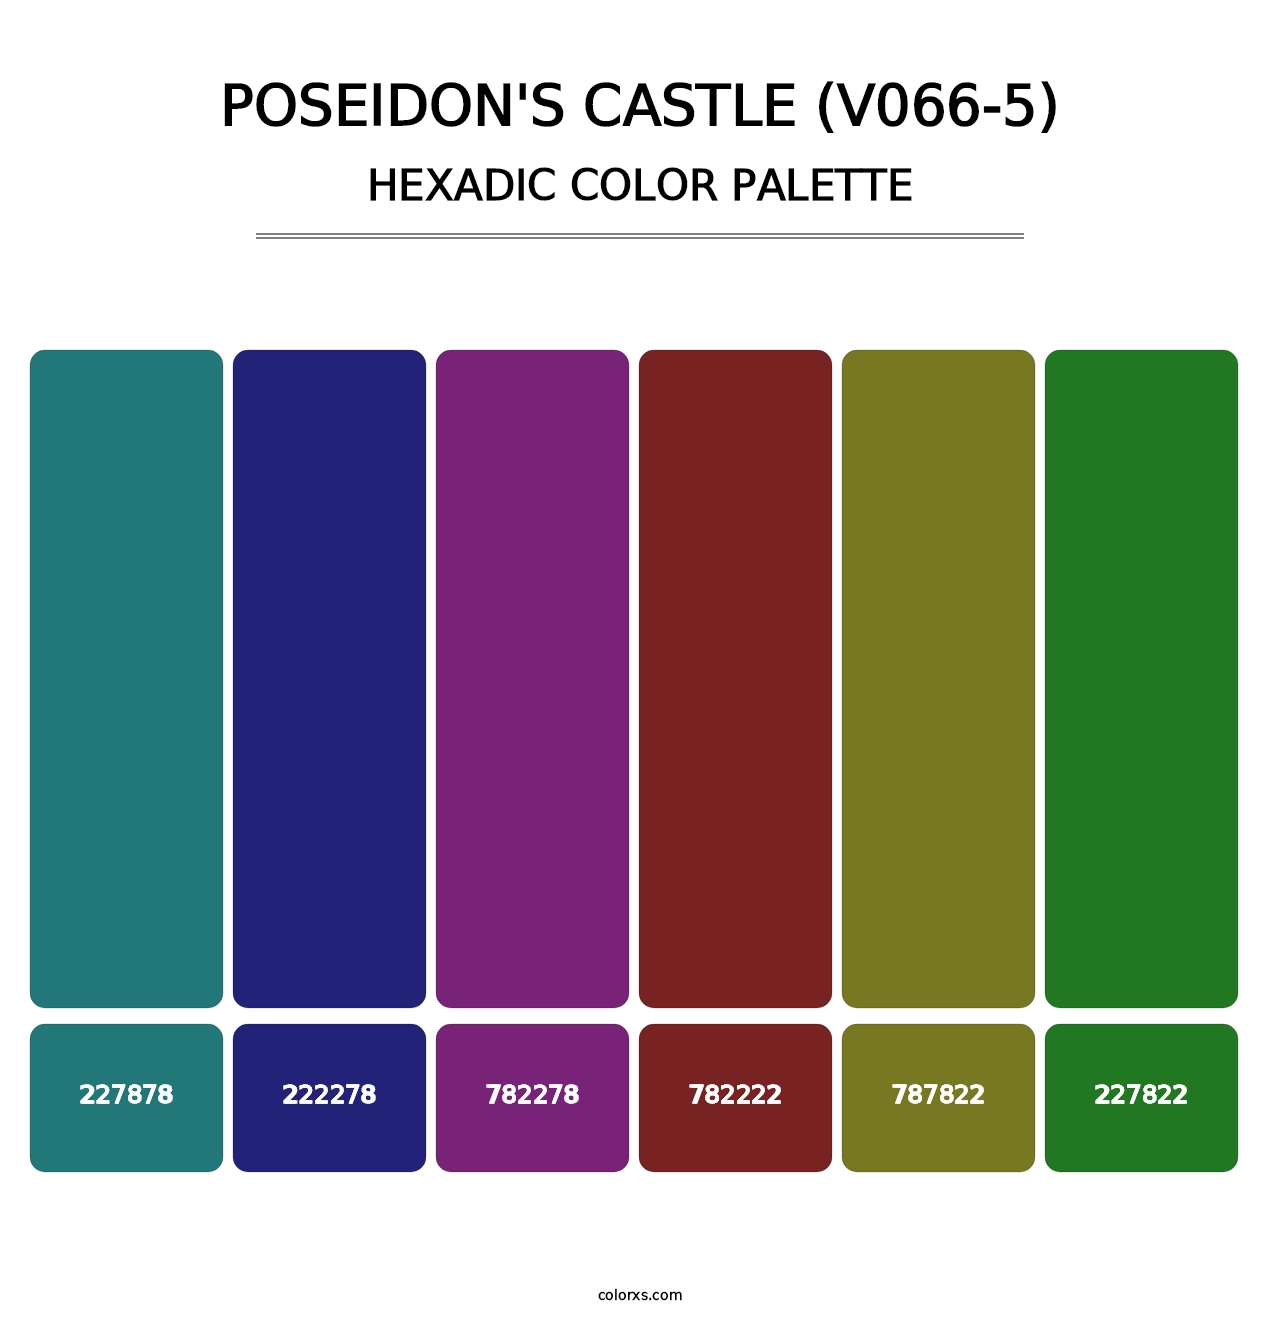 Poseidon's Castle (V066-5) - Hexadic Color Palette